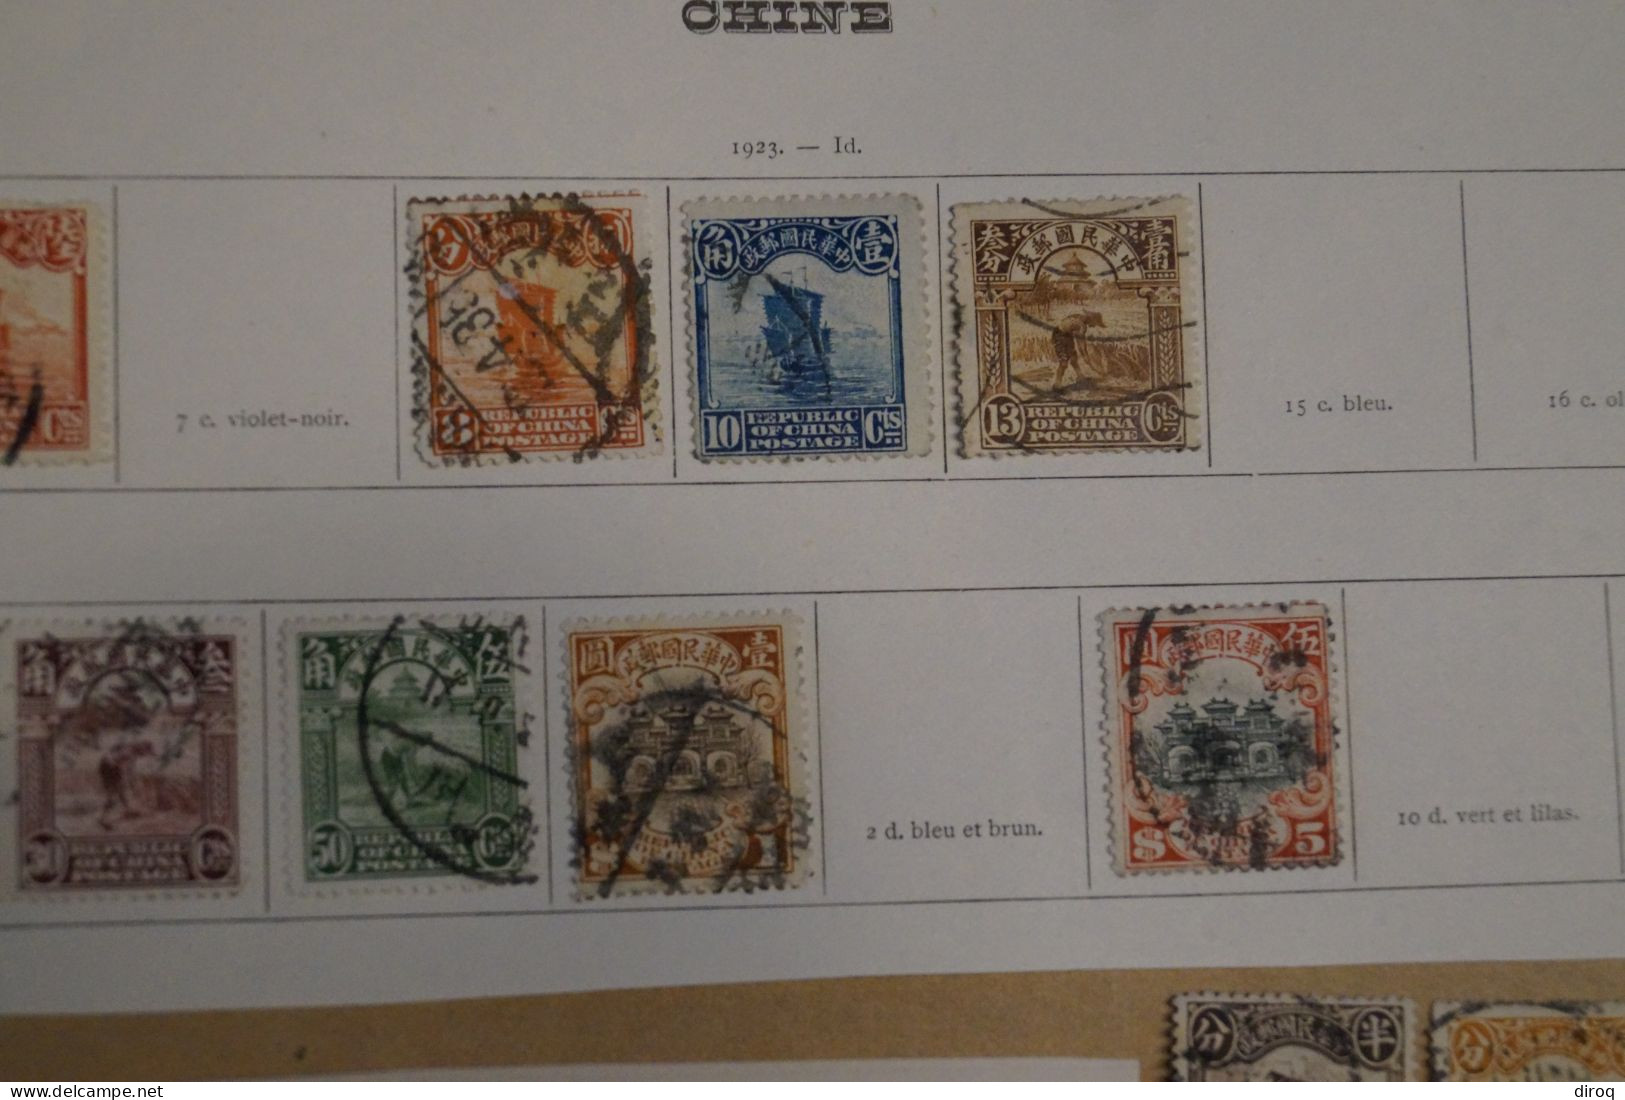 Chine,Chines,lot De 48 Timbres Oblitérés,1913 - 1923,certains Avec Surcharges, Pour Collection,collector - 1912-1949 República